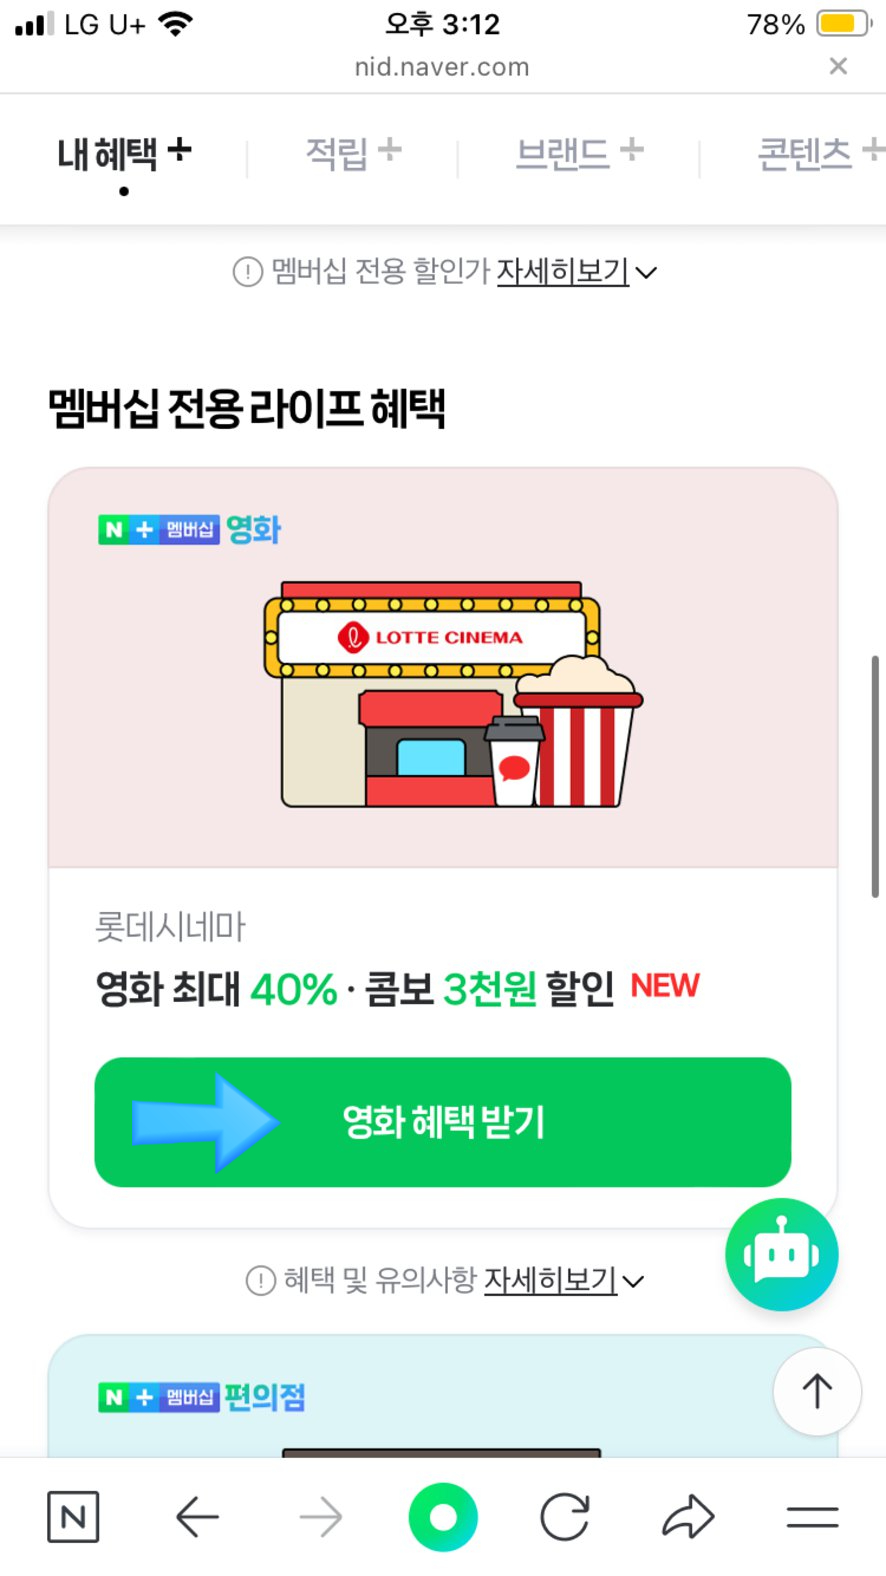 네이버 플러스 멤버십, 롯데시네마 영화 할인 예매하는 방법